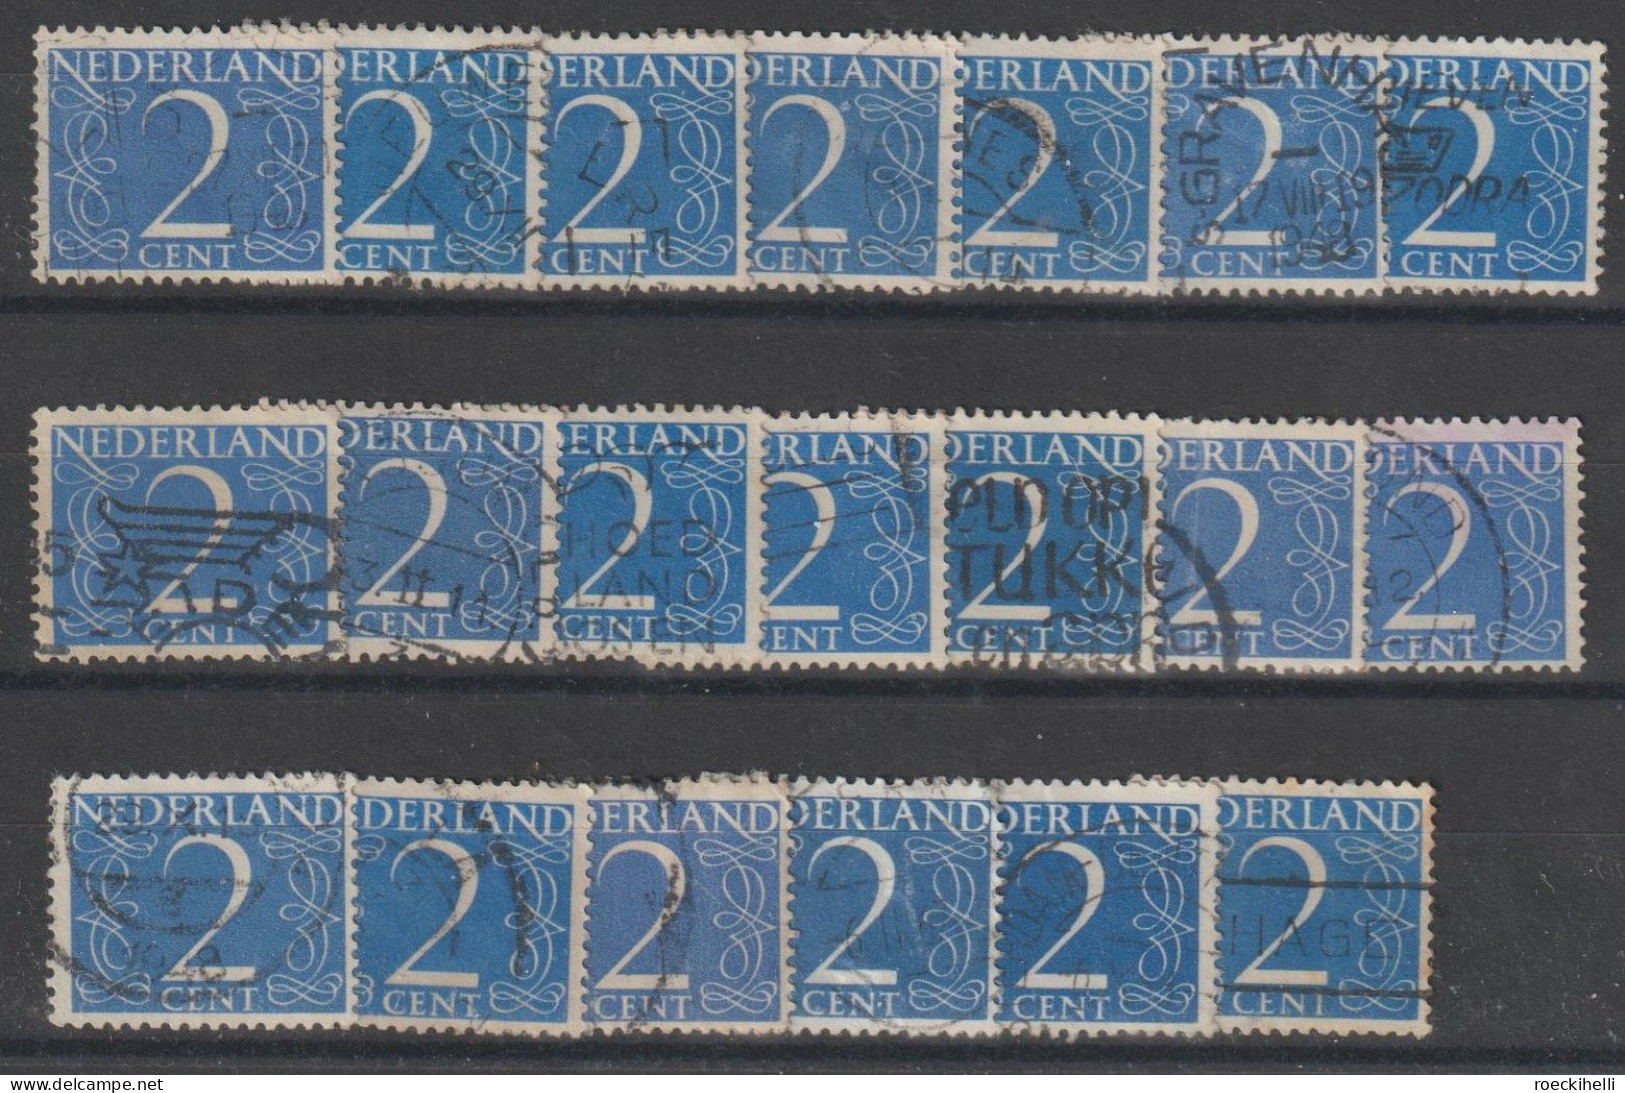 1946 - NIEDERLANDE - FM/DM "Ziffern-Zeichnung" 2 C blau - o gestempelt - s. Scan (469YxAo 01-26 nl)